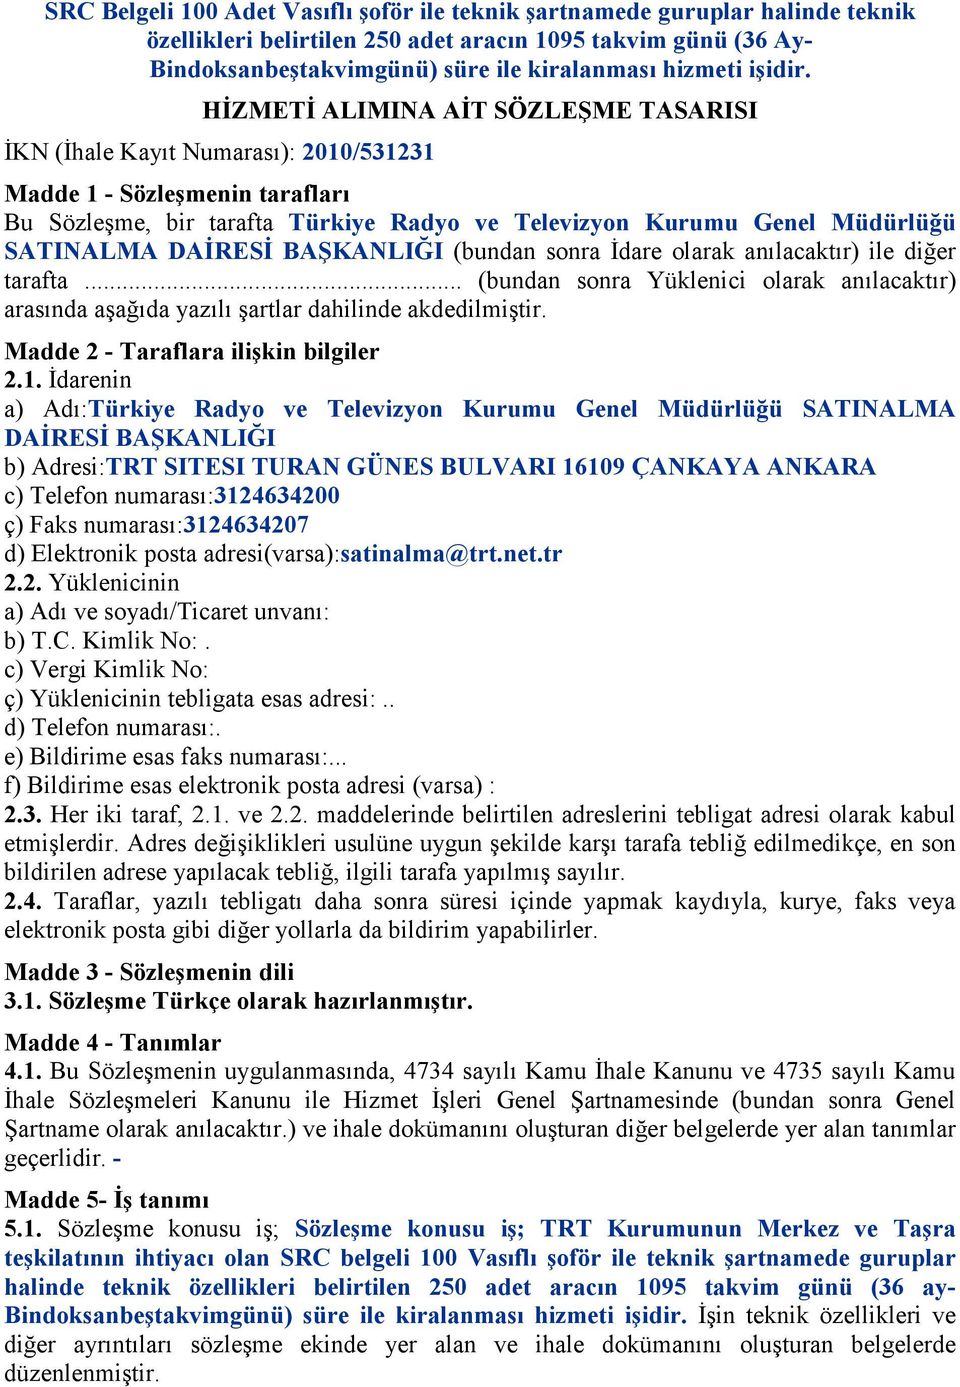 HİZMETİ ALIMINA AİT SÖZLEŞME TASARISI İKN (İhale Kayıt Numarası): 2010/531231 Madde 1 - Sözleşmenin tarafları Bu Sözleşme, bir tarafta Türkiye Radyo ve Televizyon Kurumu Genel Müdürlüğü SATINALMA